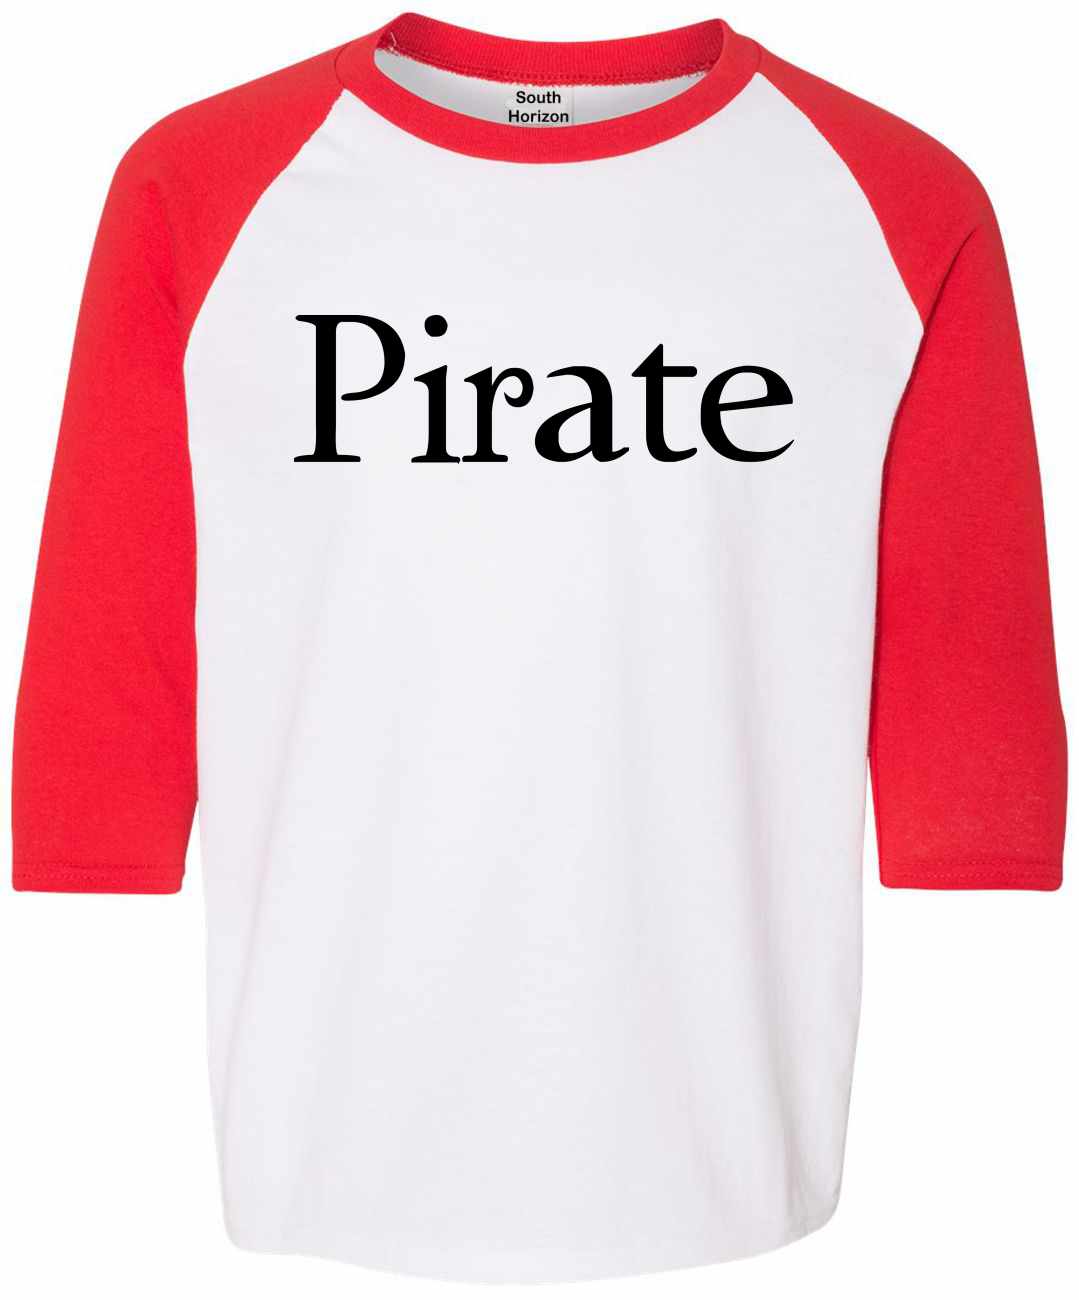 Pirate on Youth Baseball Shirt